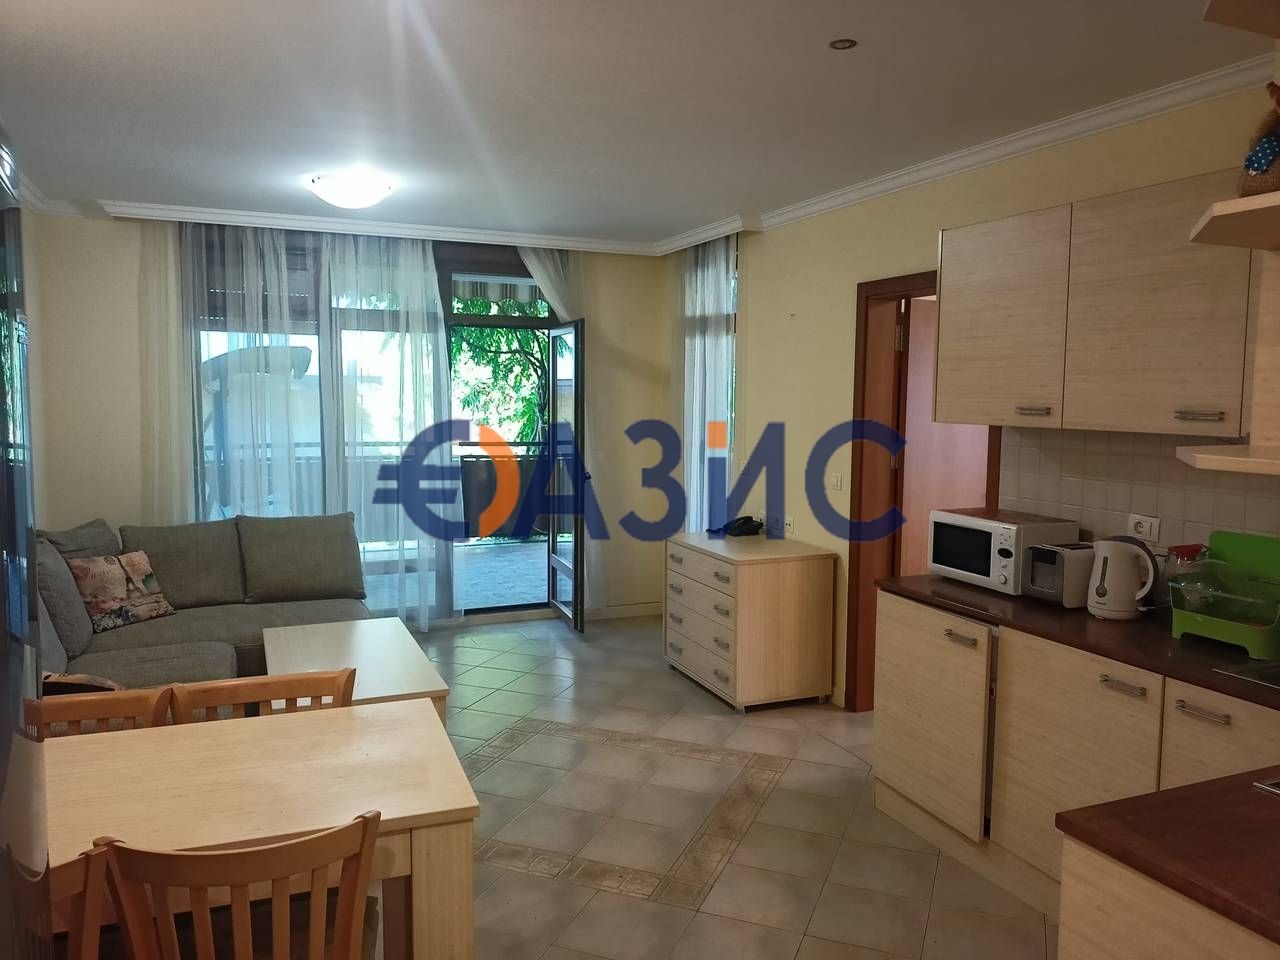 Apartment in Sozopol, Bulgaria, 106 sq.m - picture 1